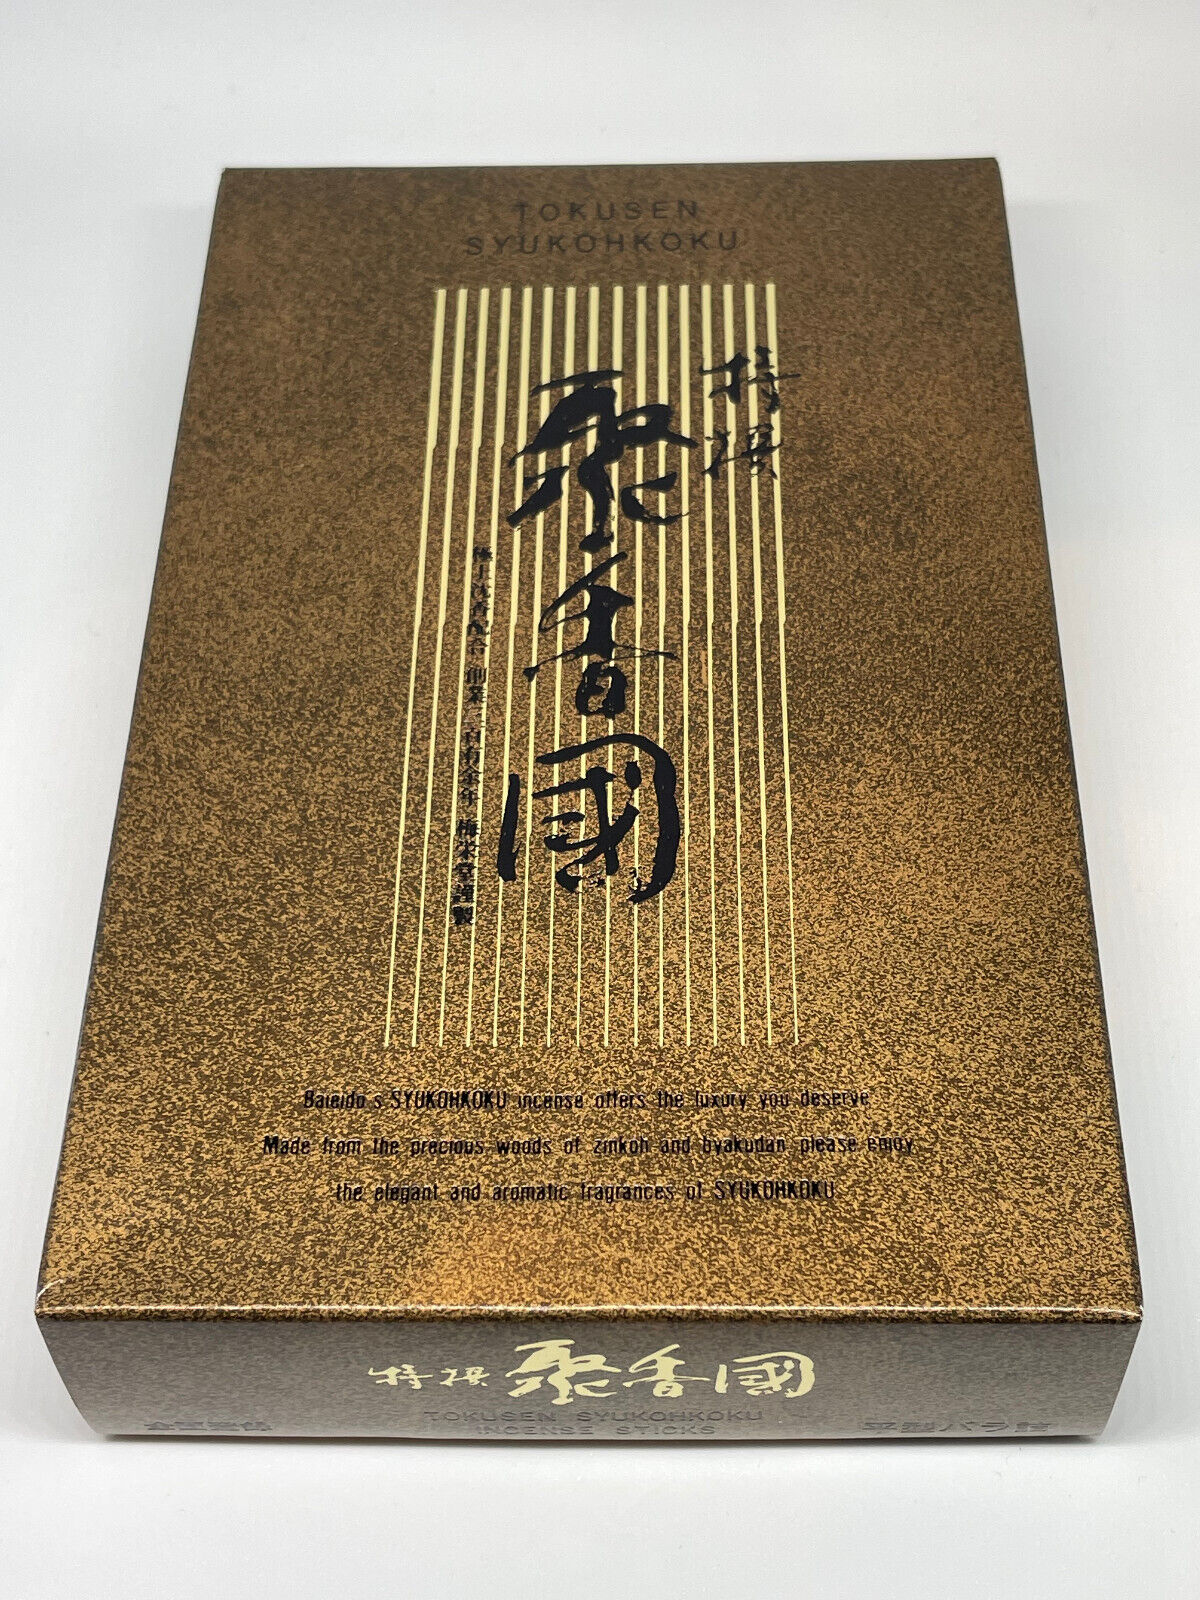 Baieido Japanese Incense - Tokusen Shukohkoku Flat Box  - US Seller